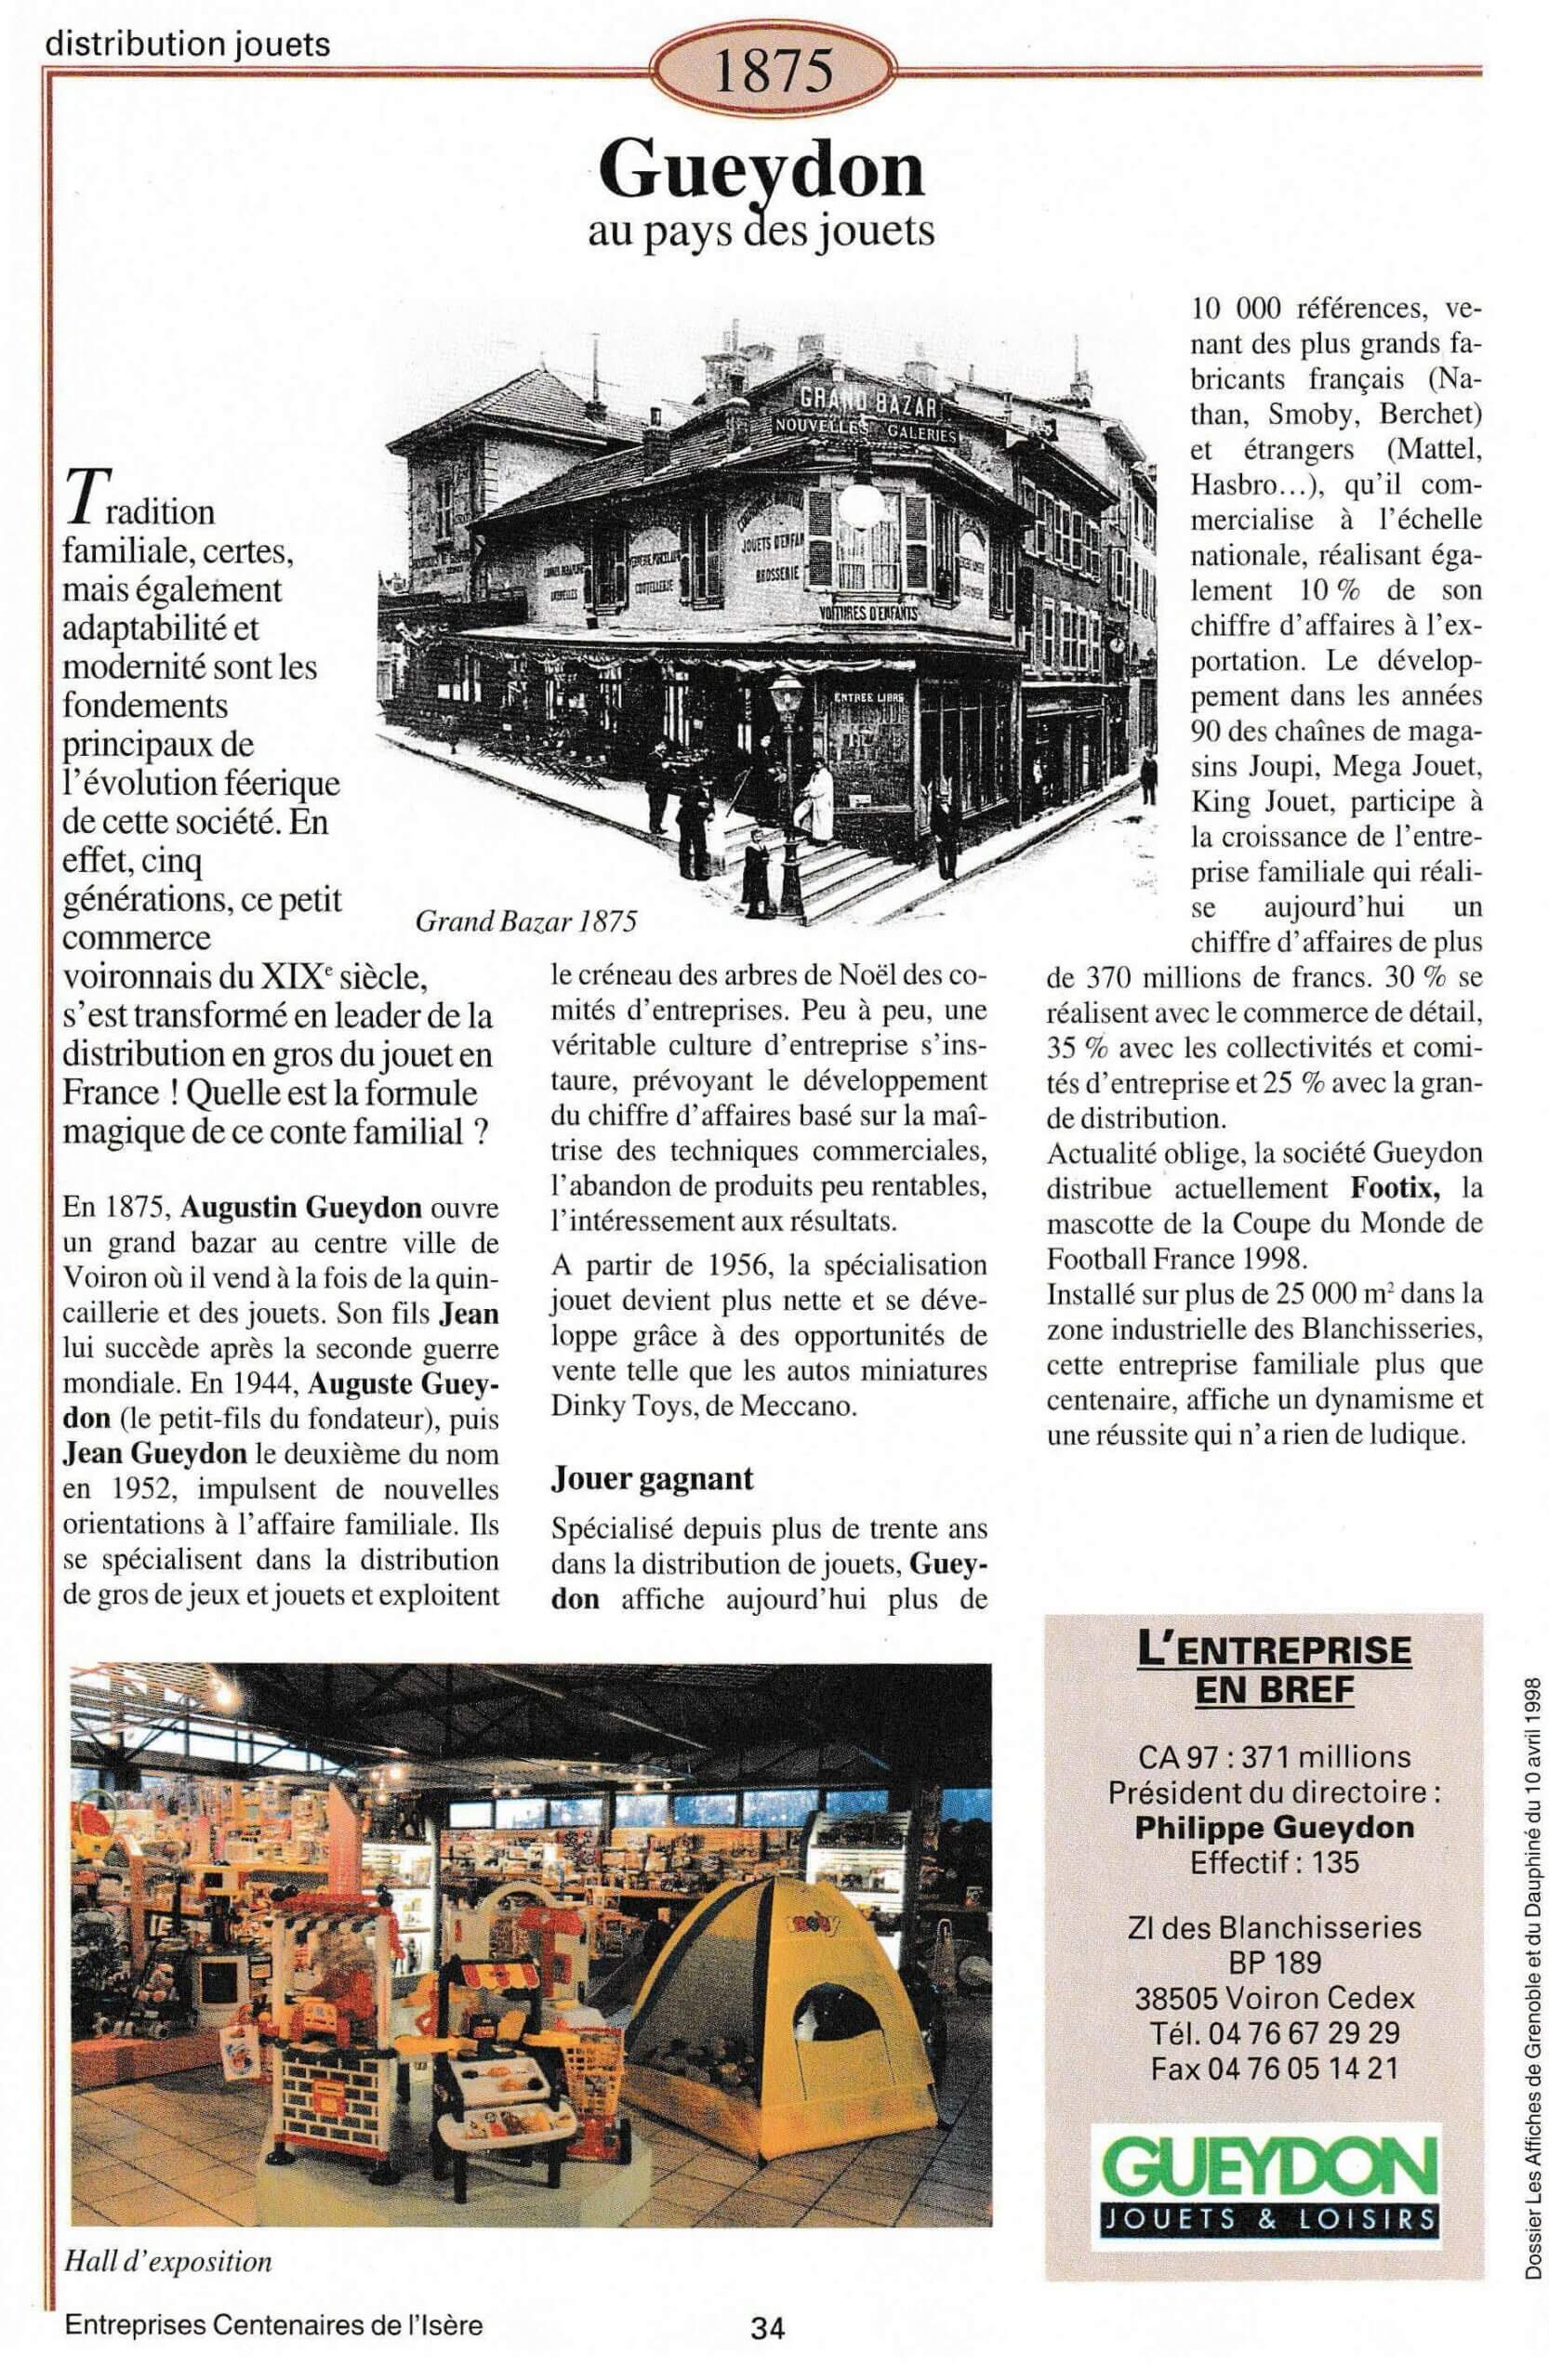 Gueydon - fiche du supplément "Entreprises centenaires en Isère", publié par Les affiches de Grenoble et du Dauphiné, juin 1998.